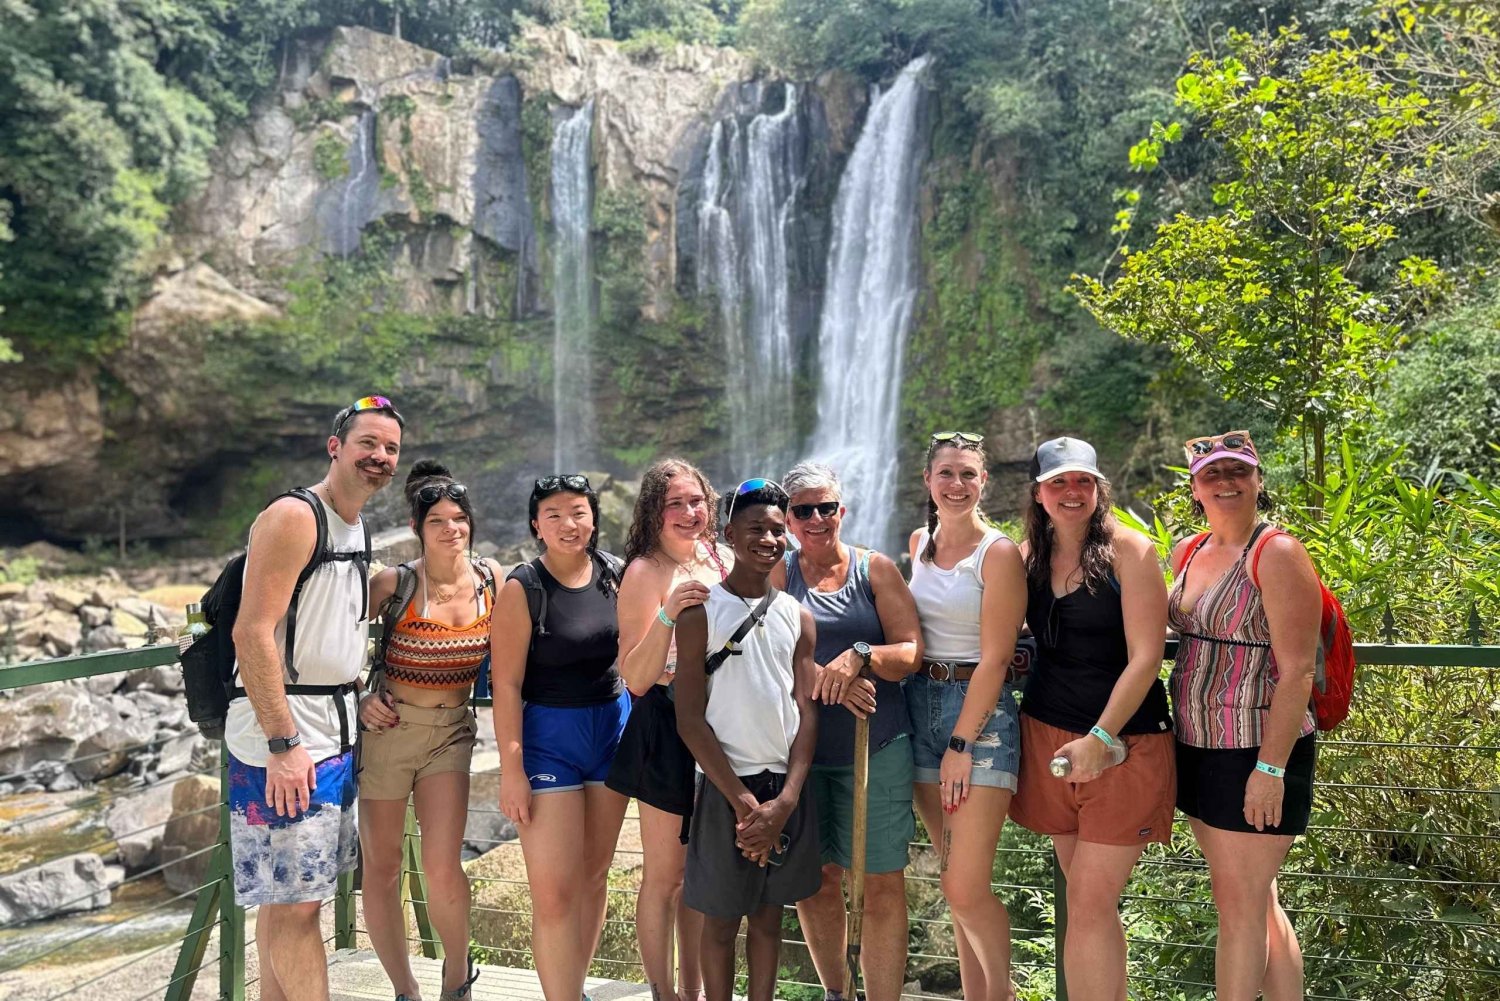 Enjoy and explore the amazing Nauyaca Waterfall!